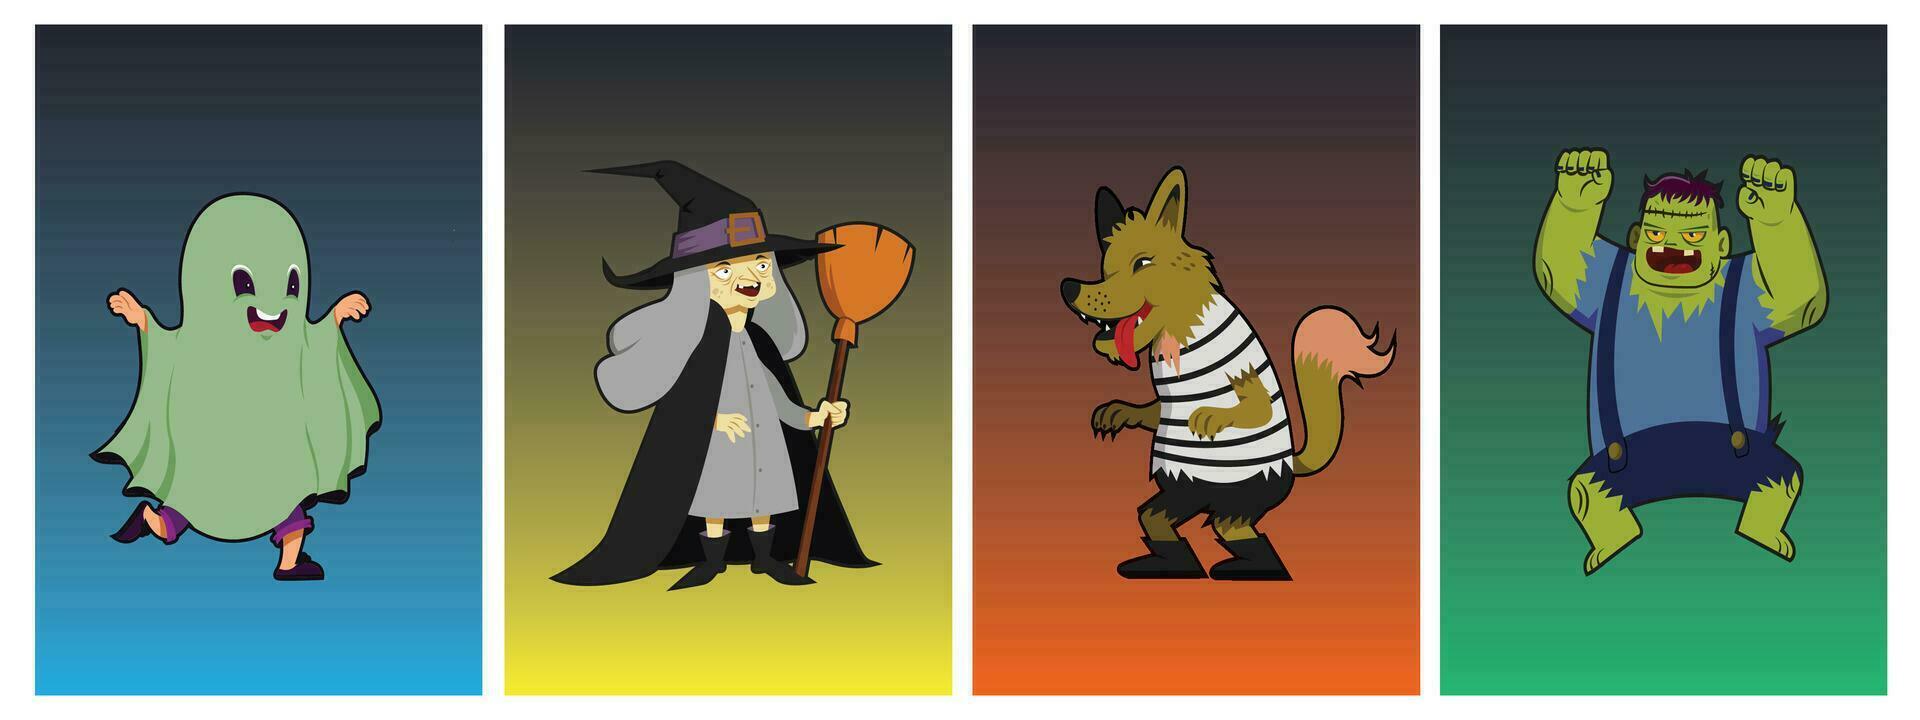 collezione di Vintage ▾ stile Halloween personaggi Compreso mostri, fantasmi, lupi e streghe. vettore illustrazione